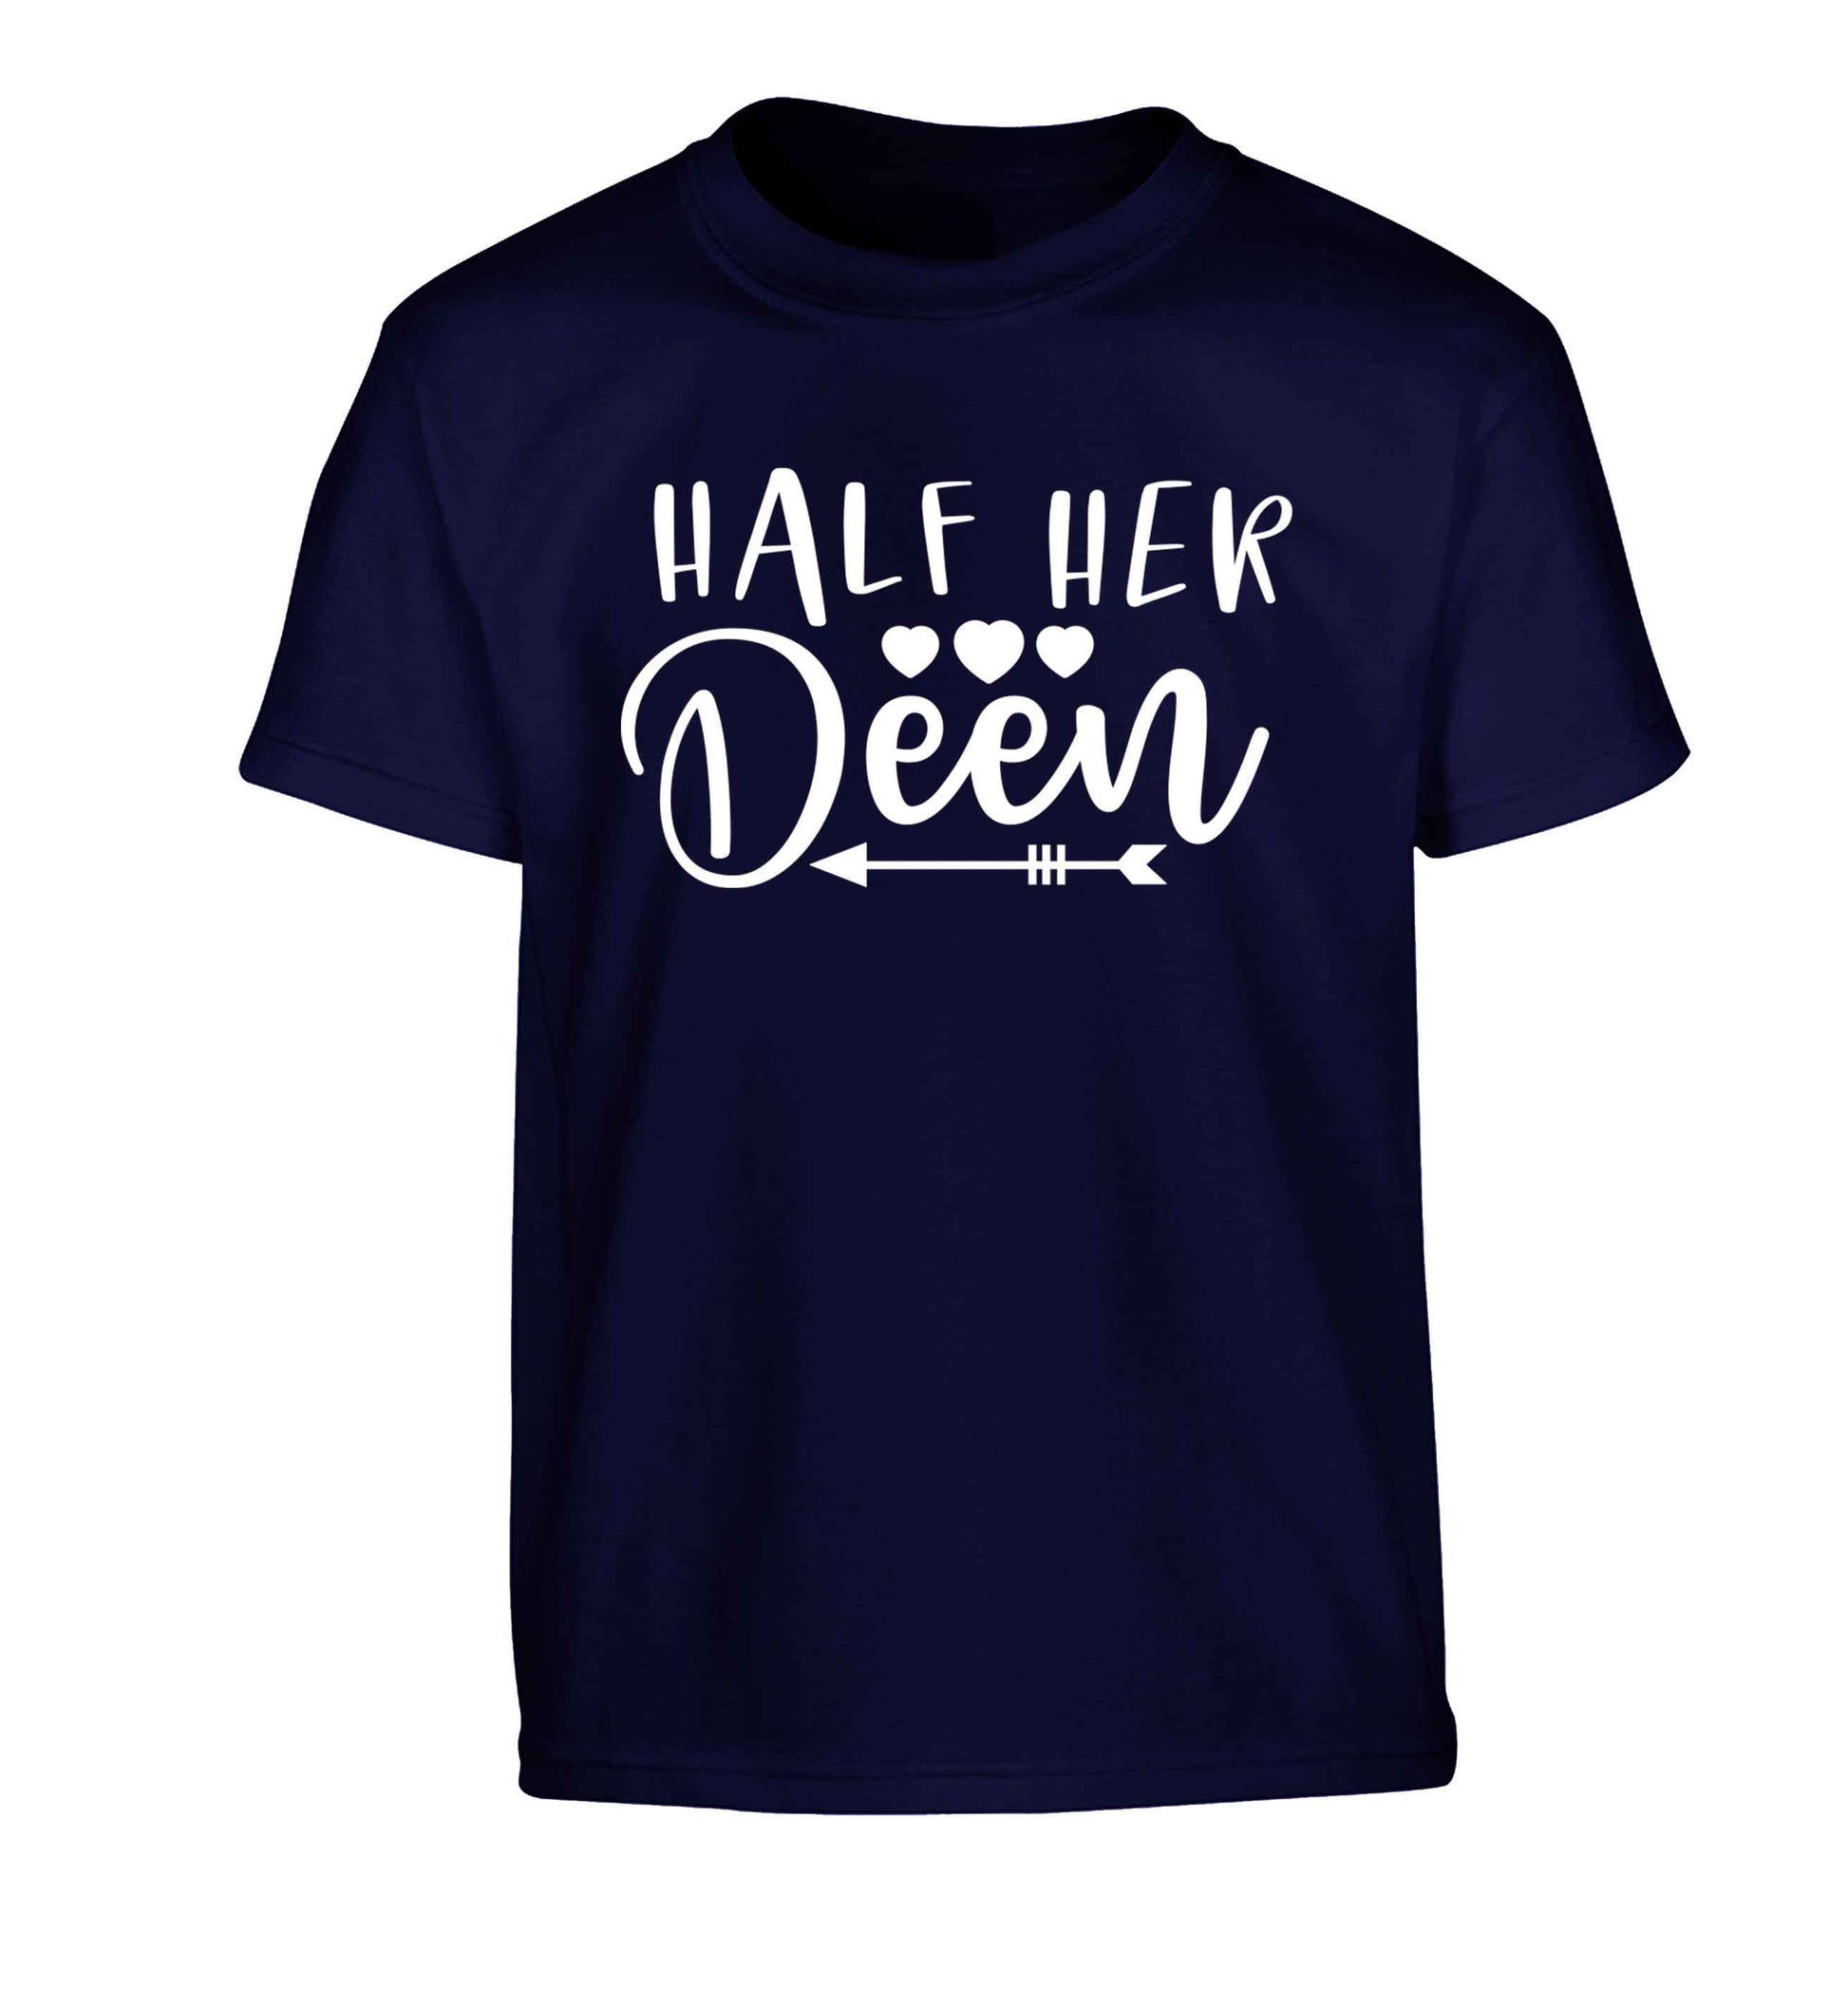 Half her deen Children's navy Tshirt 12-13 Years